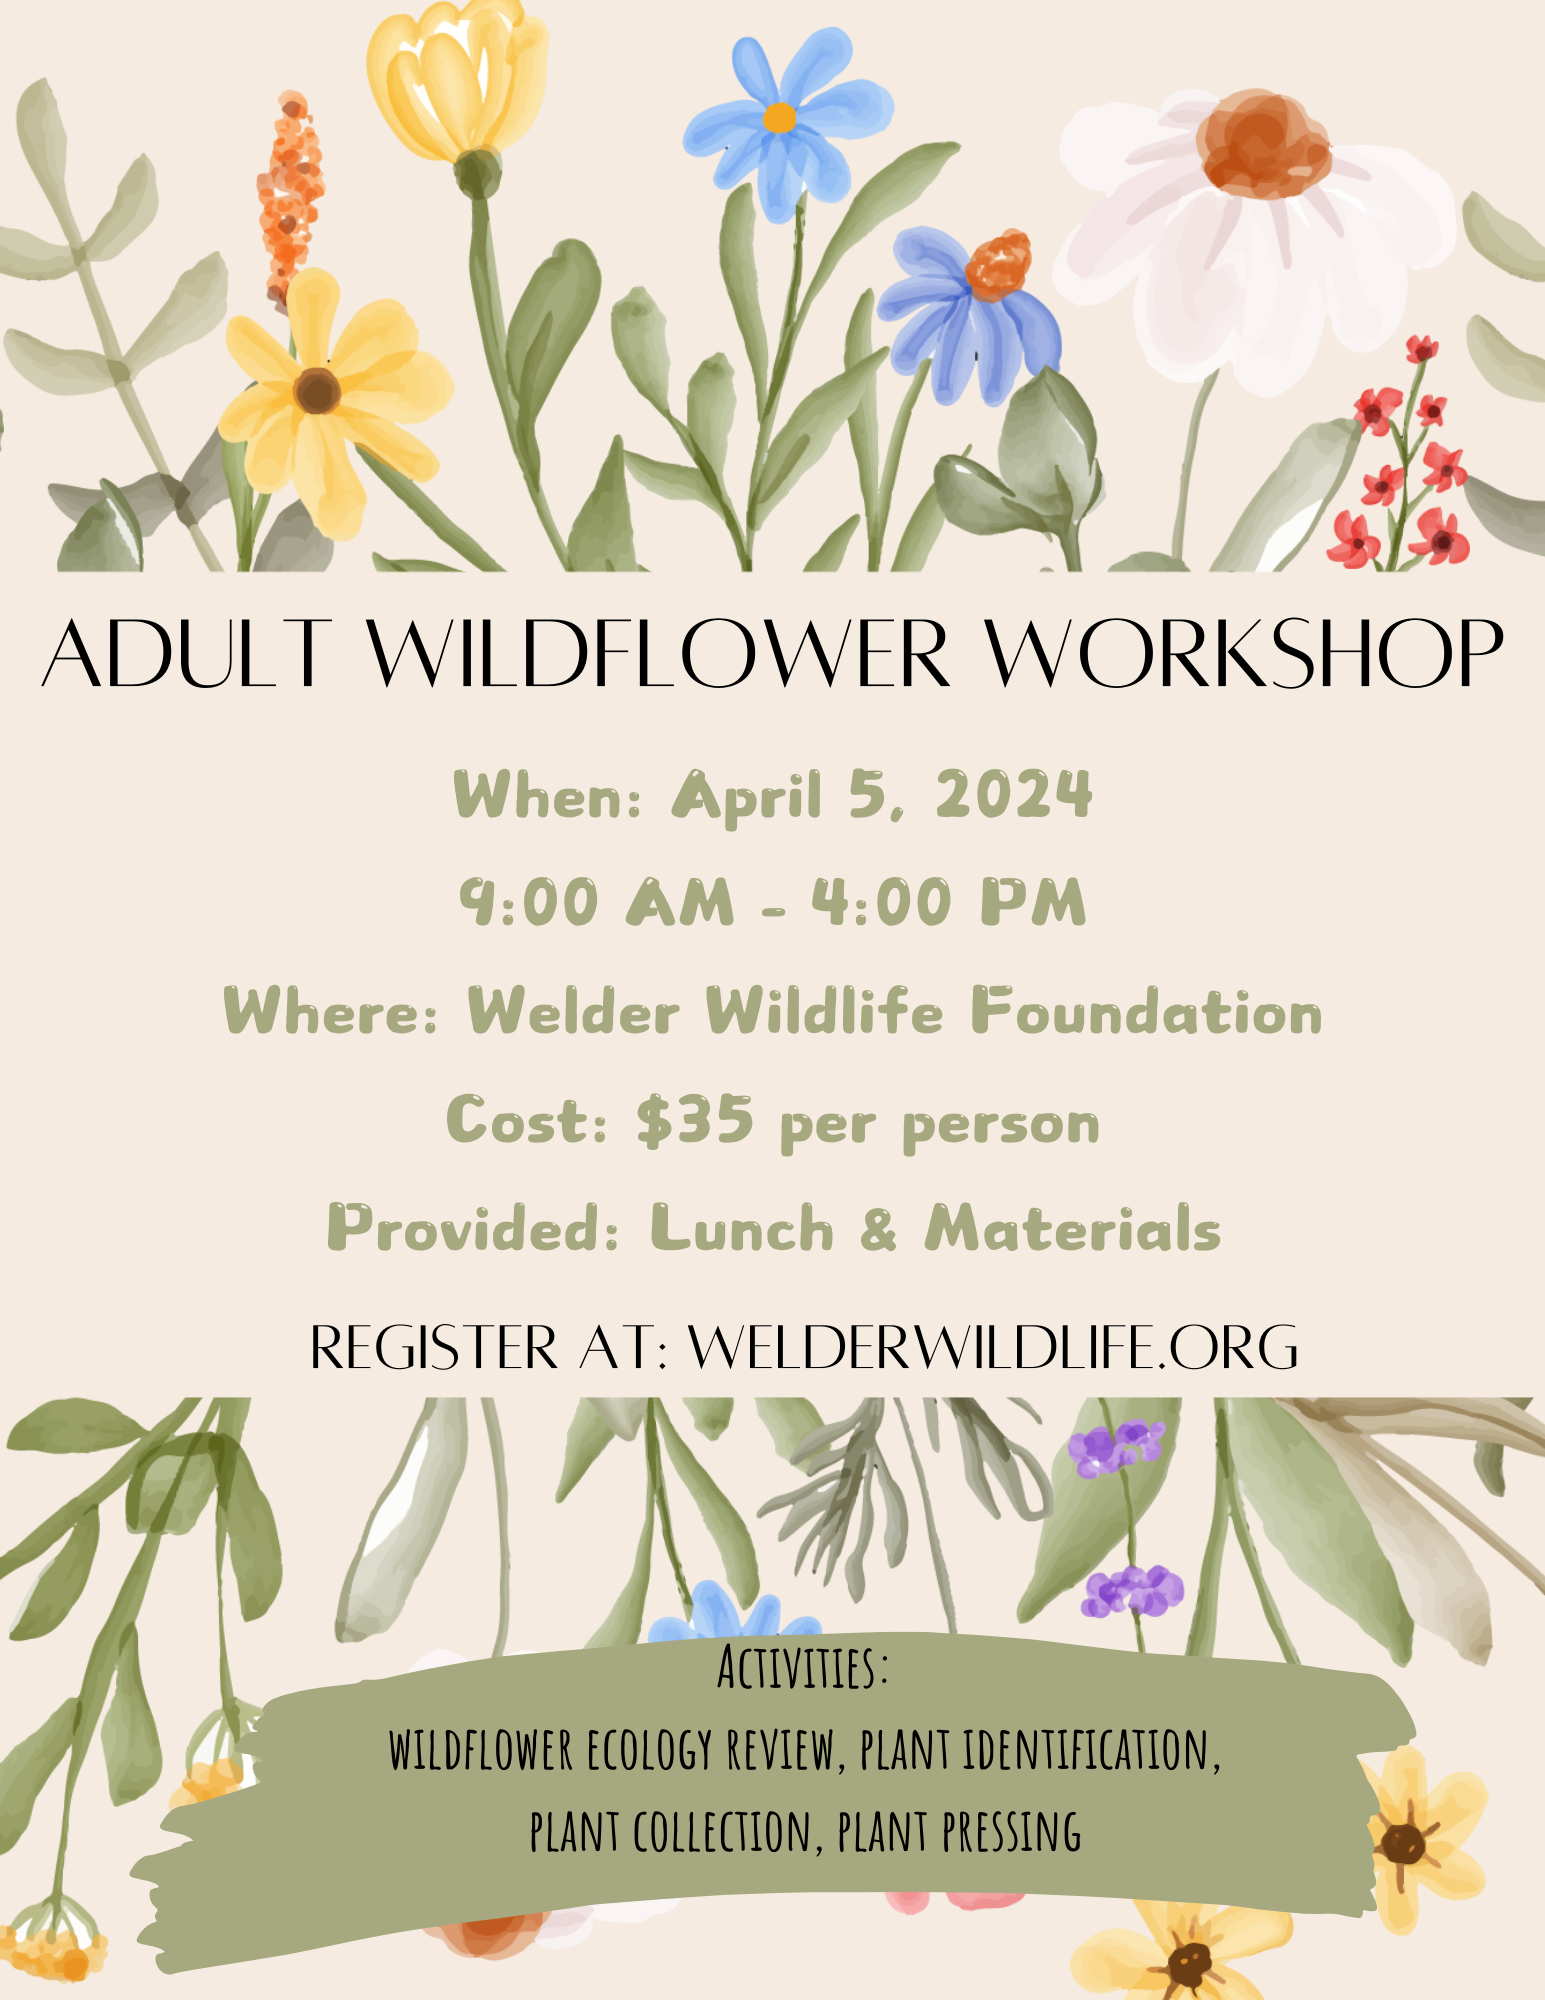 Wildflower workshop flyer